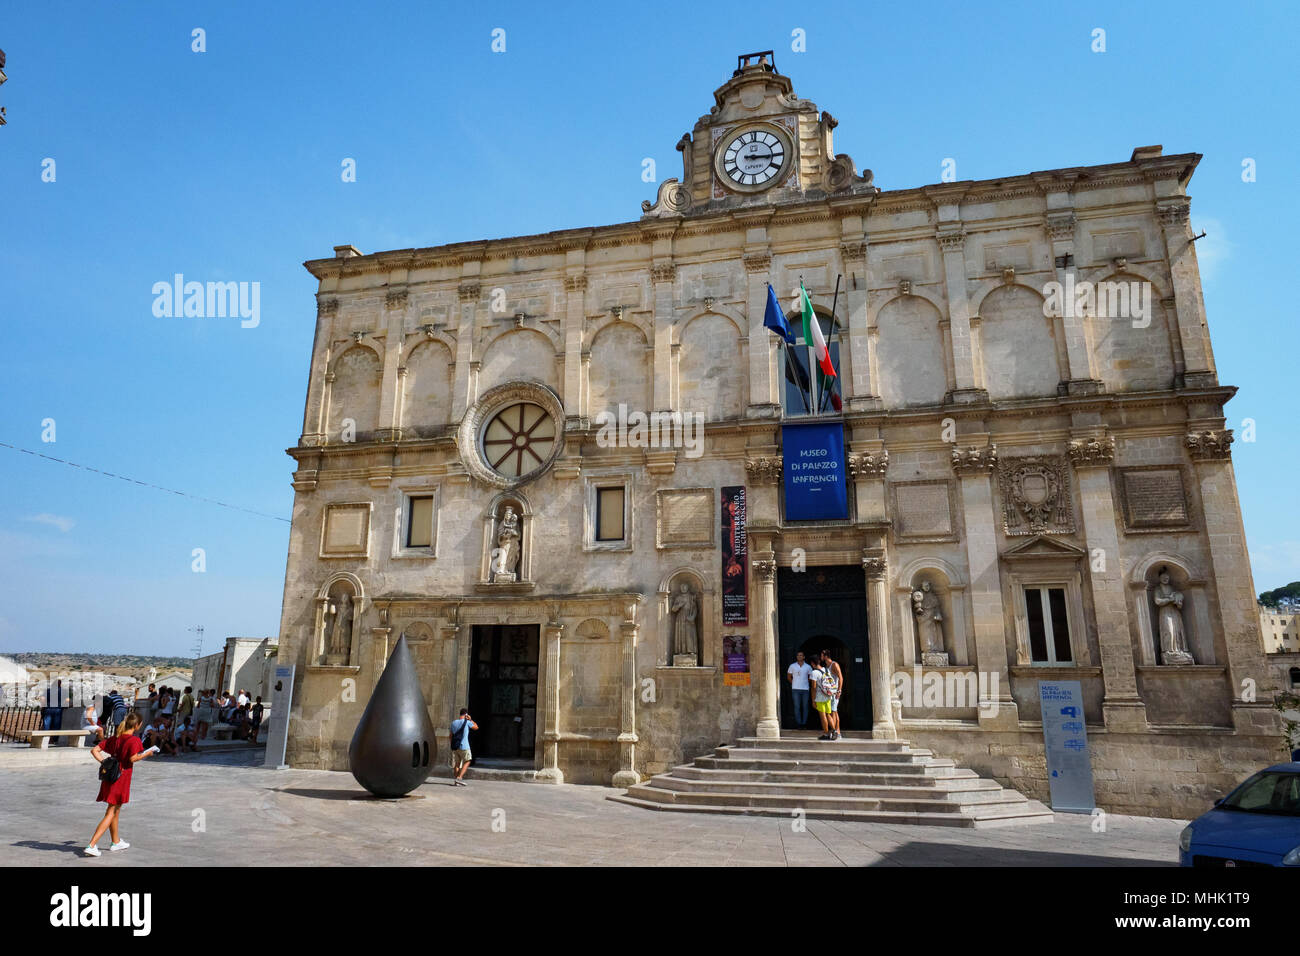 Matera (Italie), septembre 2017. Palazzo Lanfranchi, accueil de l'Art ancien et contemporain Musée de la Basilicate, avec la sculpture en forme de goutte. Banque D'Images